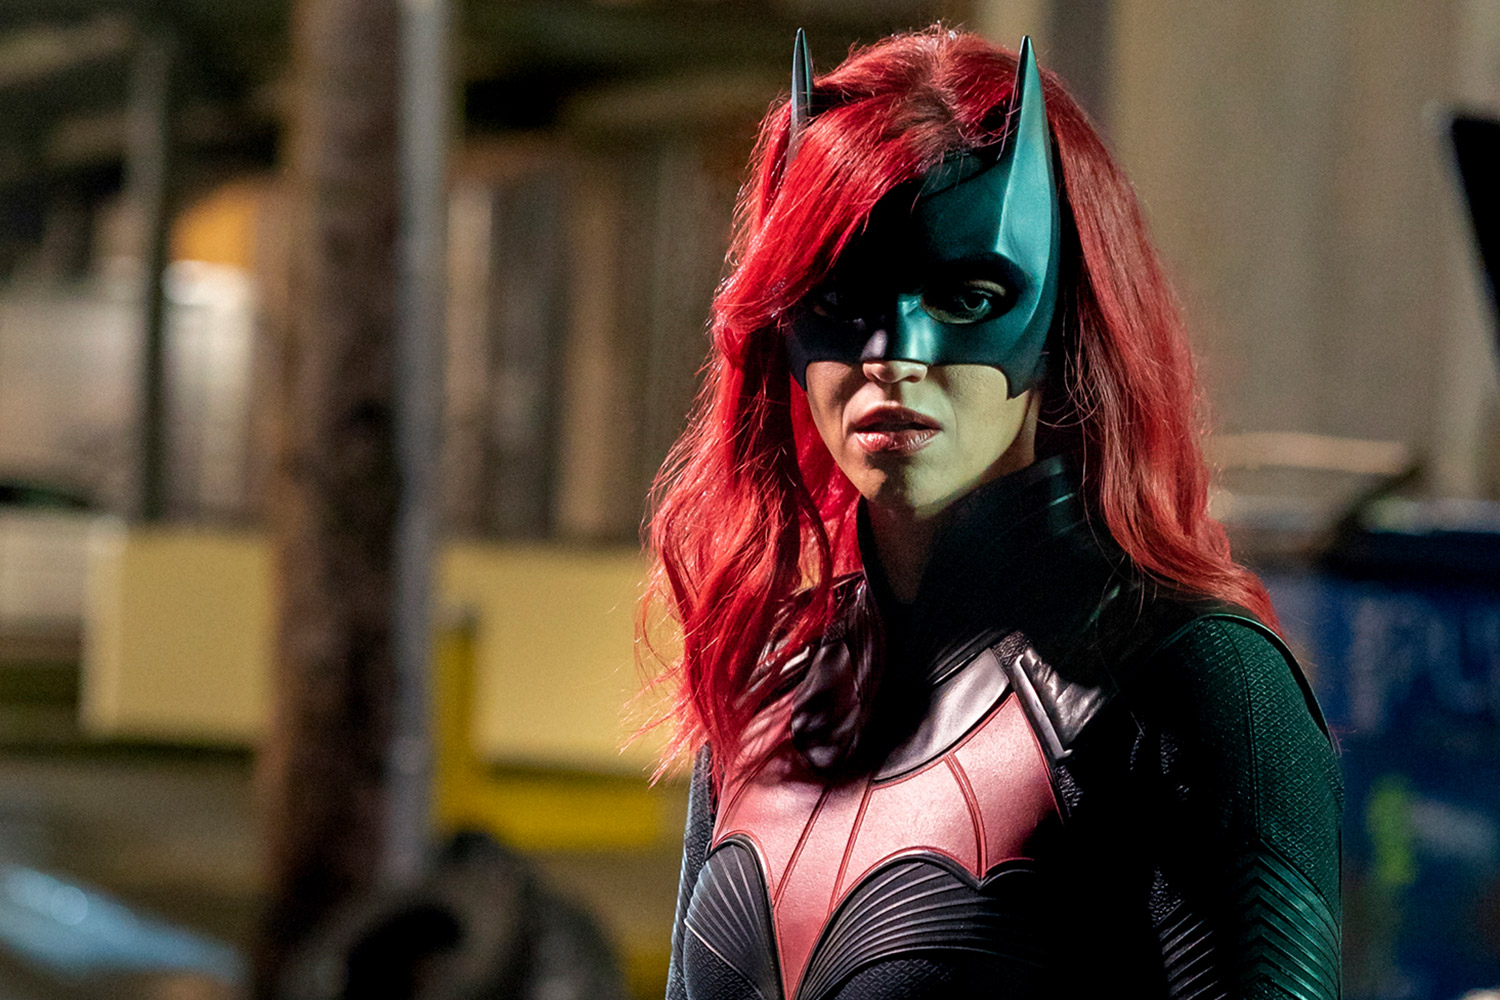 Ruby Rose Mengundurkan Diri Dari Serial Batwoman : Seluruh Wajahku Gatal Gatal karena Kostum